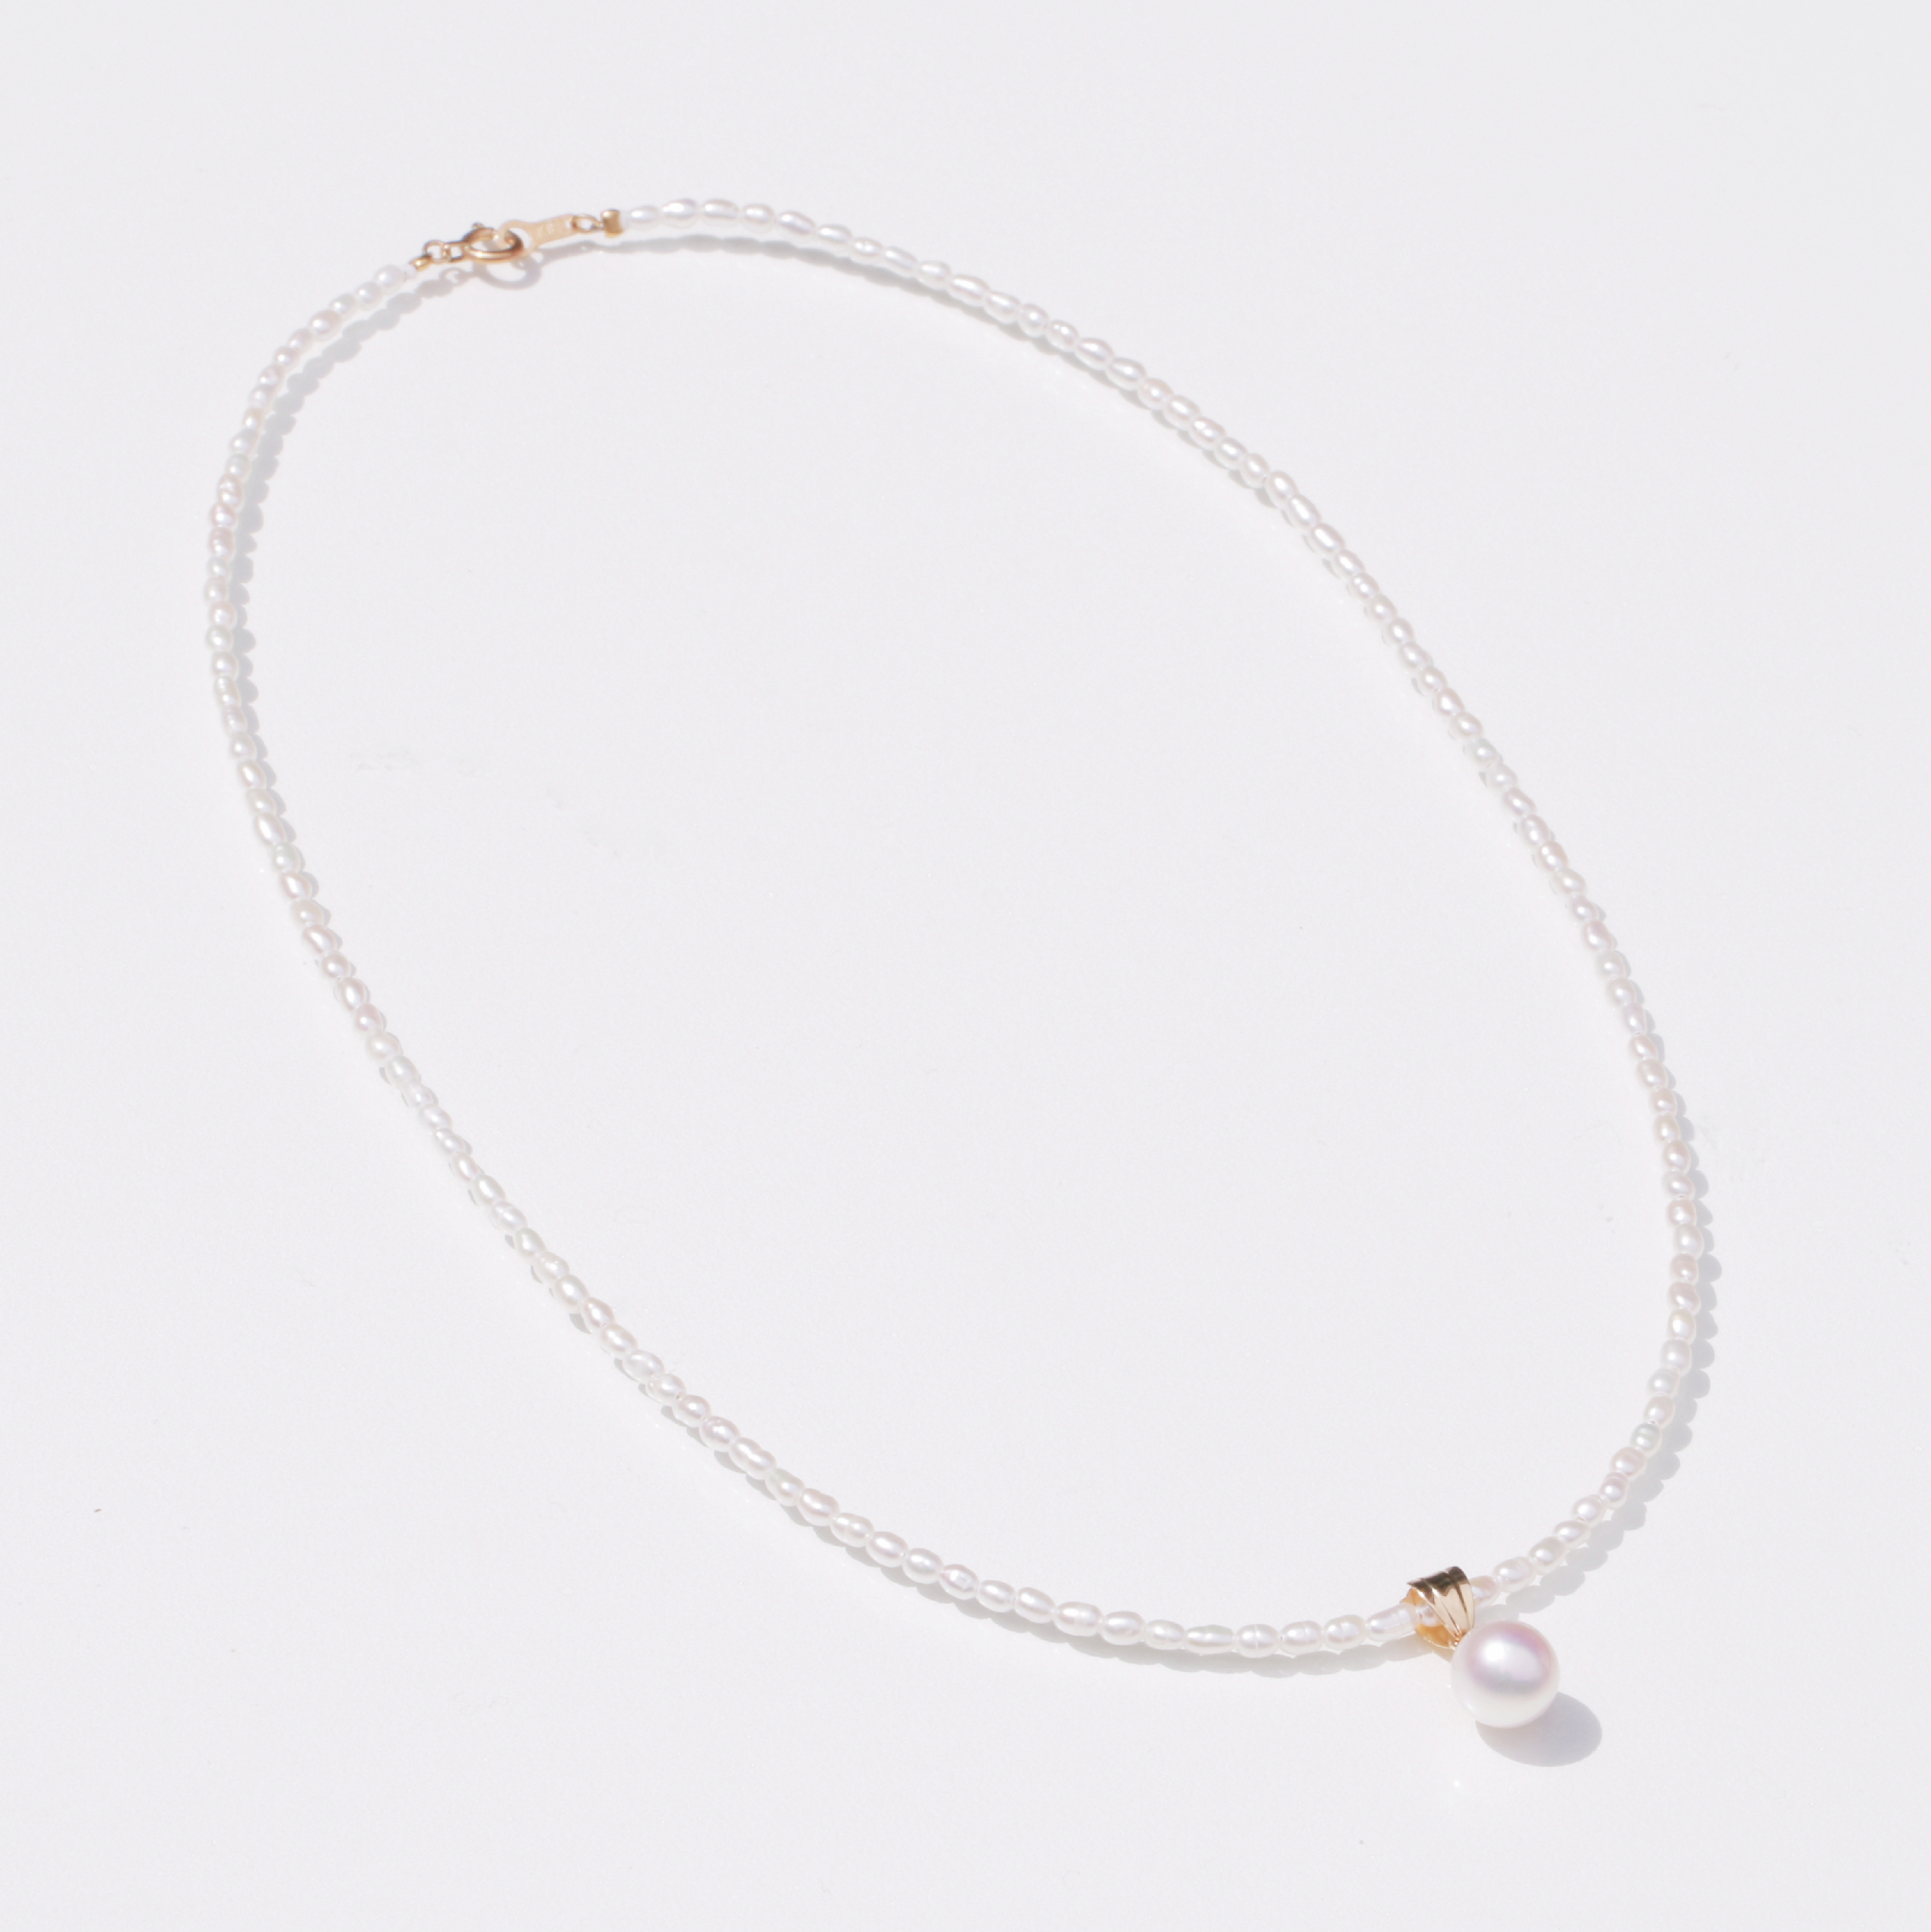 【新品未使用】アコヤ真珠 トップ付 淡水真珠 シルバー ネックレス